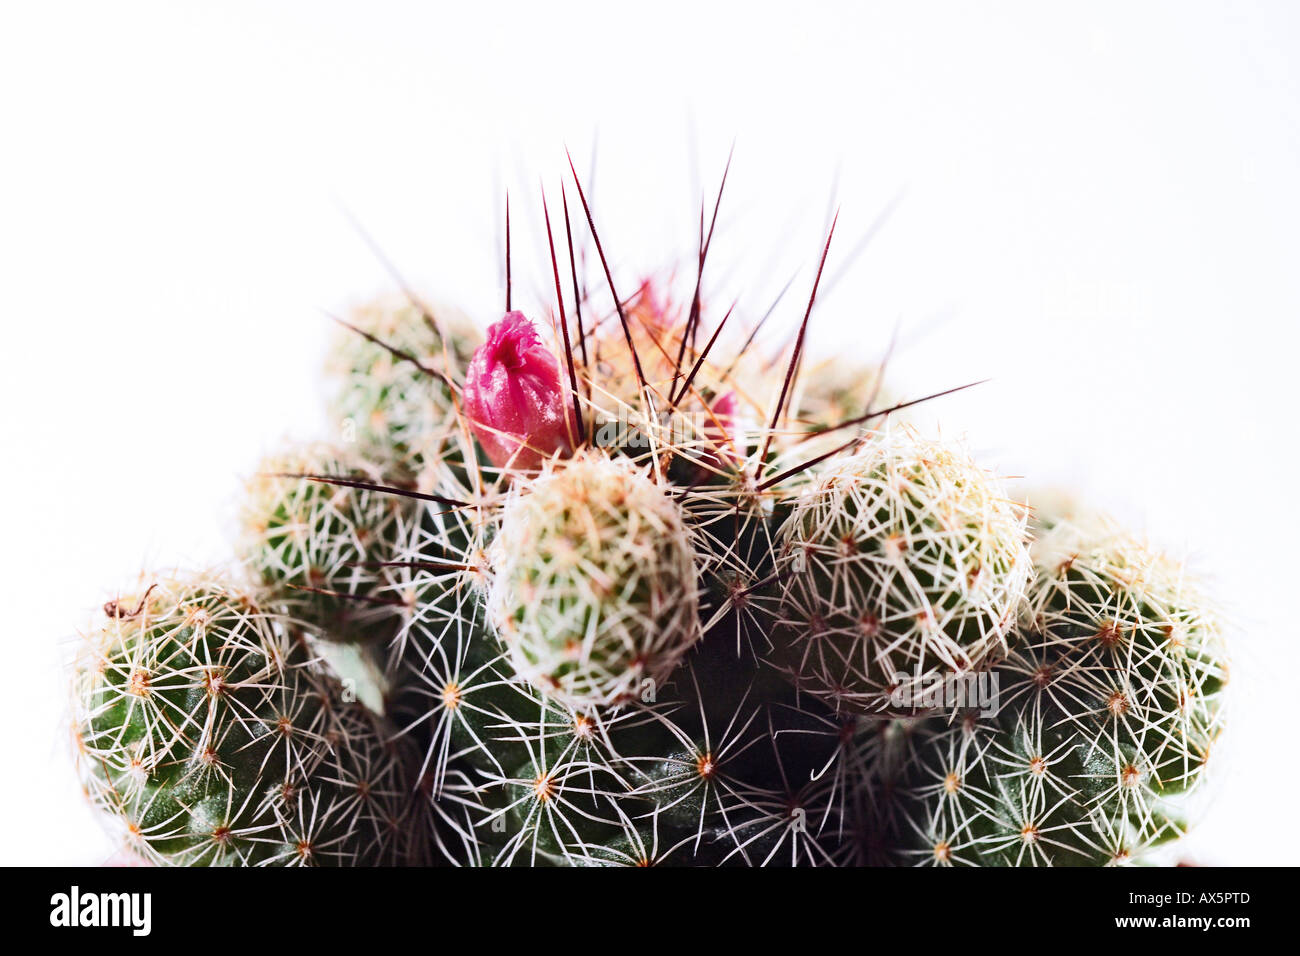 Les épines et les fleurs de cactus, close-up Banque D'Images